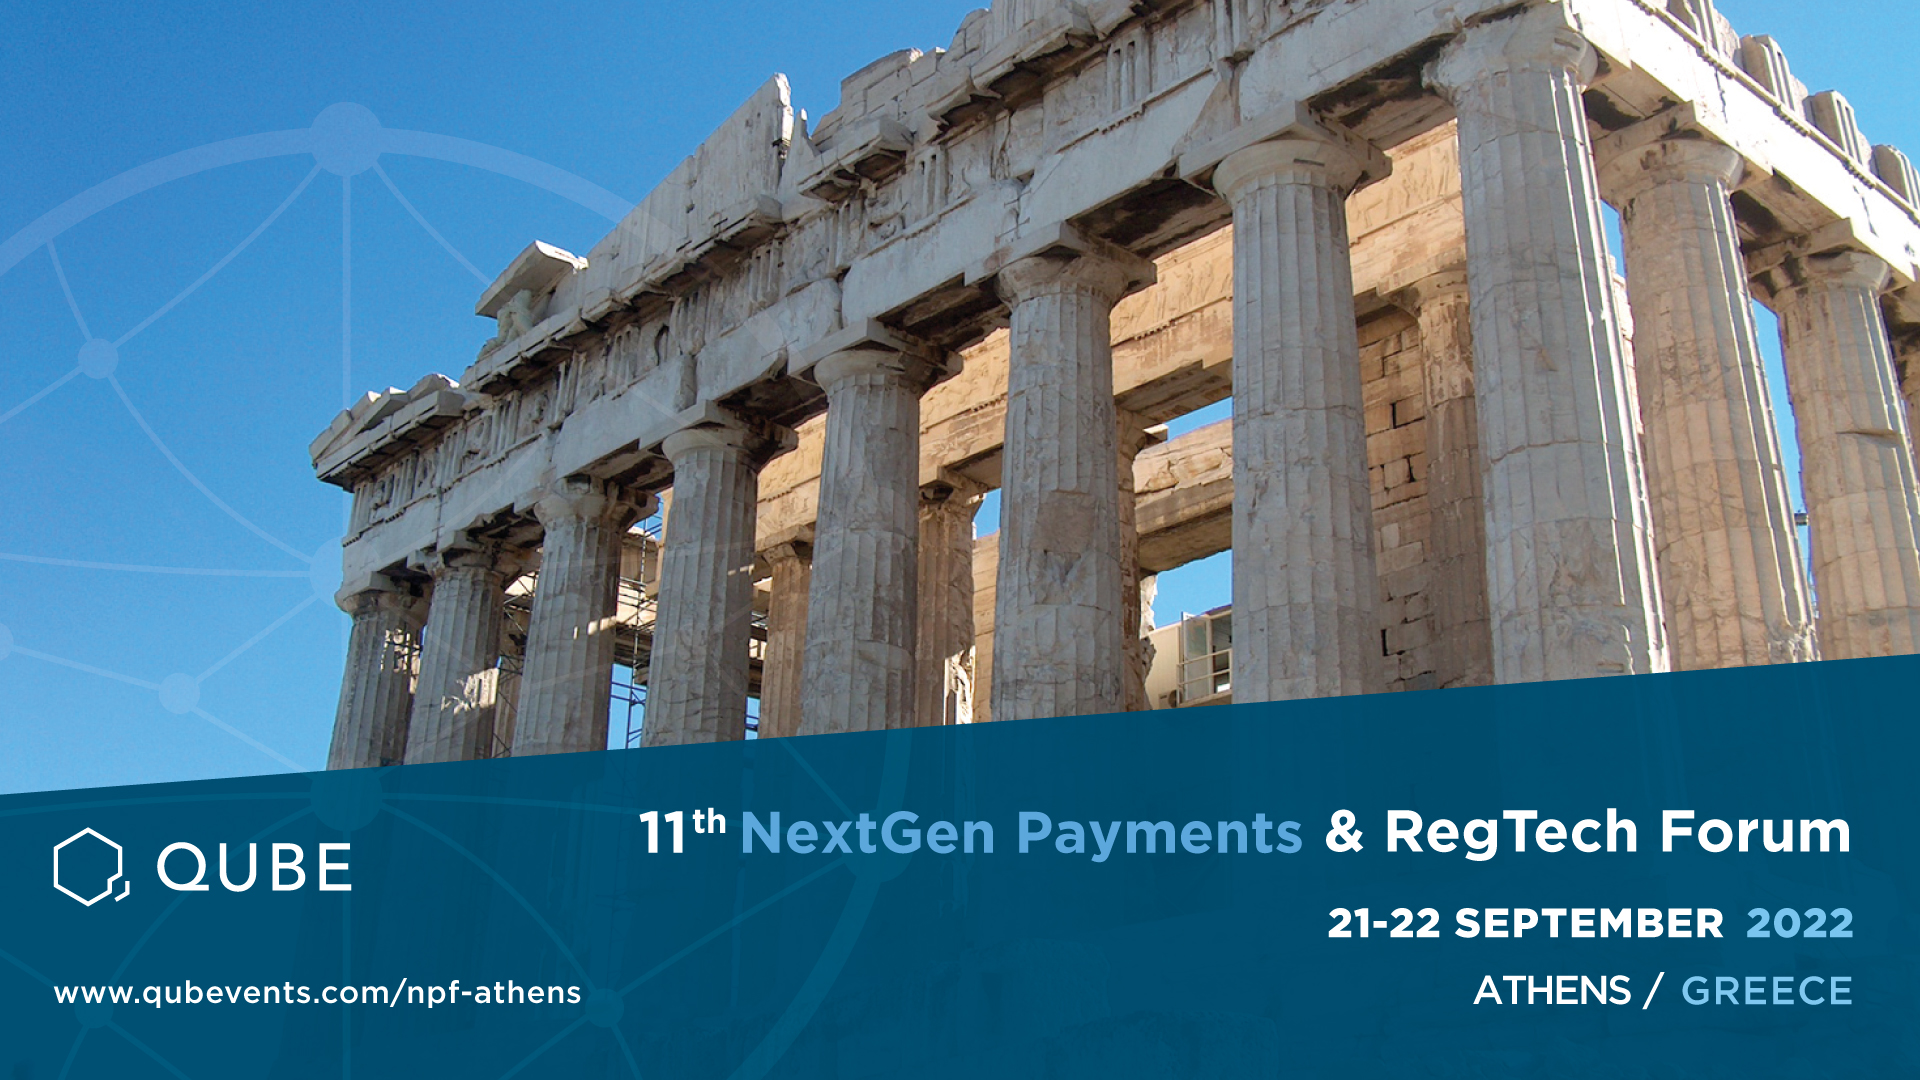 The 11th NexGen Payments & RegTech Forum